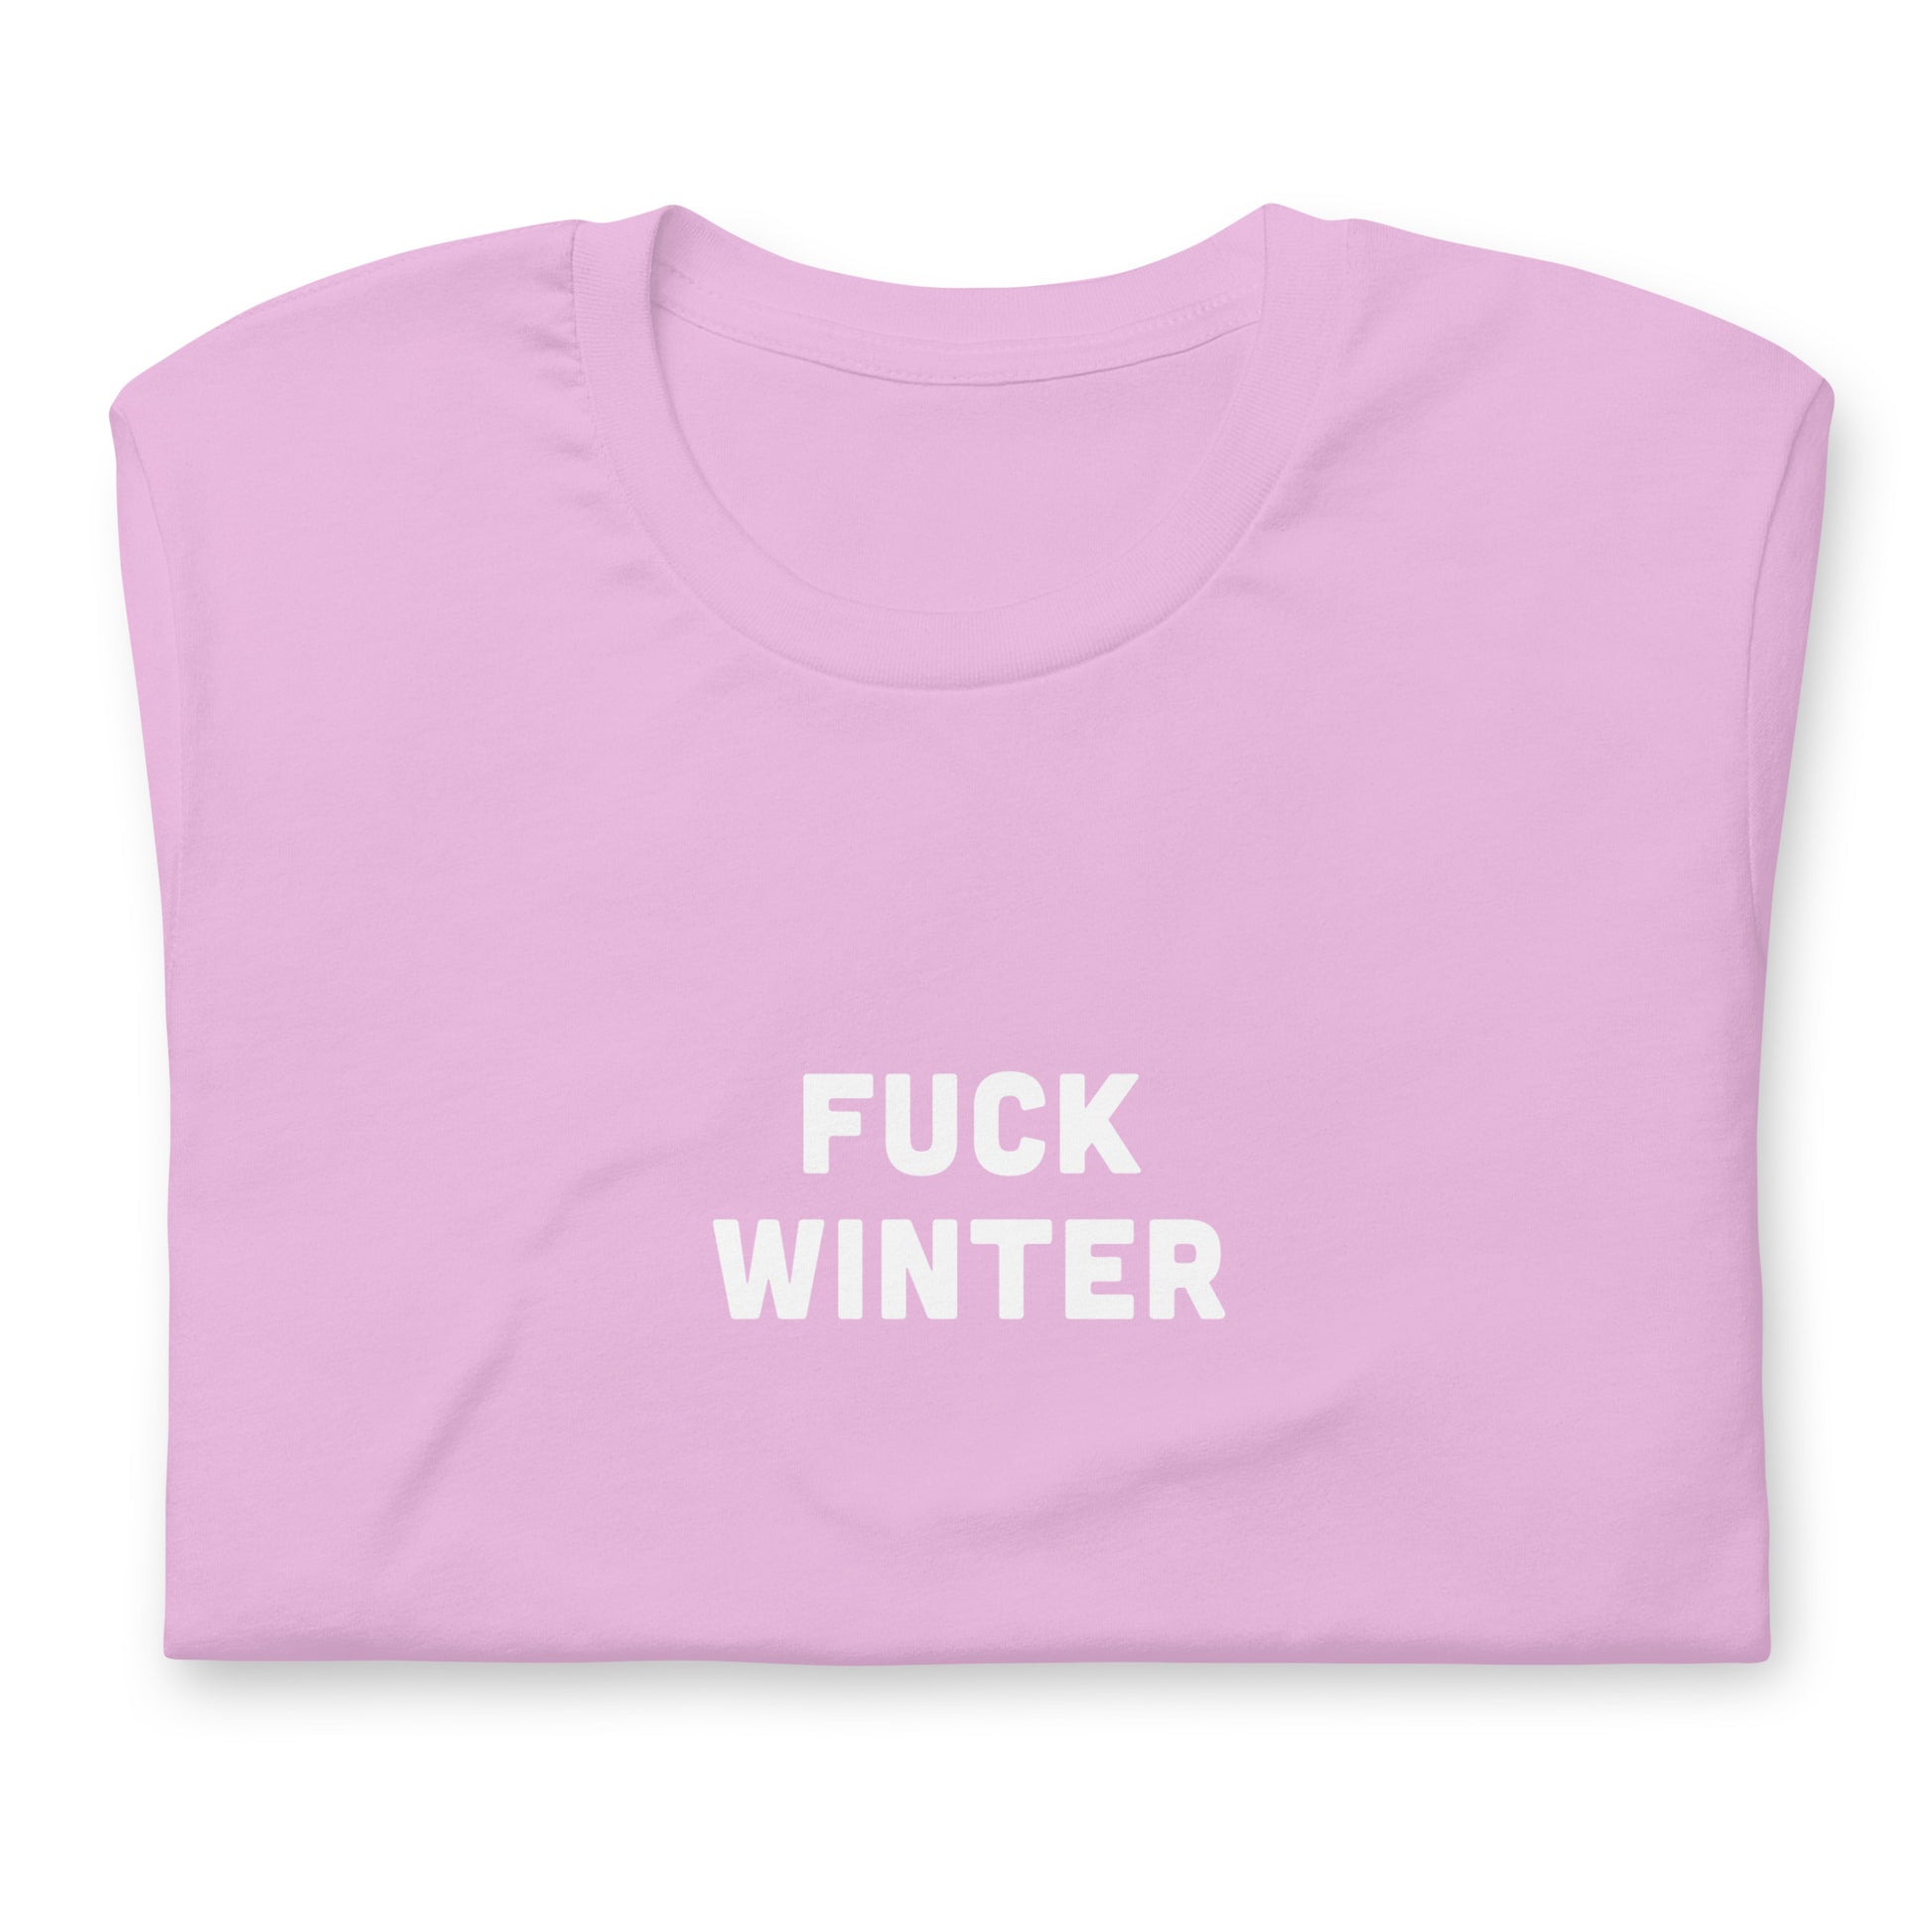 Fuck Winter T-Shirt Size S Color Asphalt